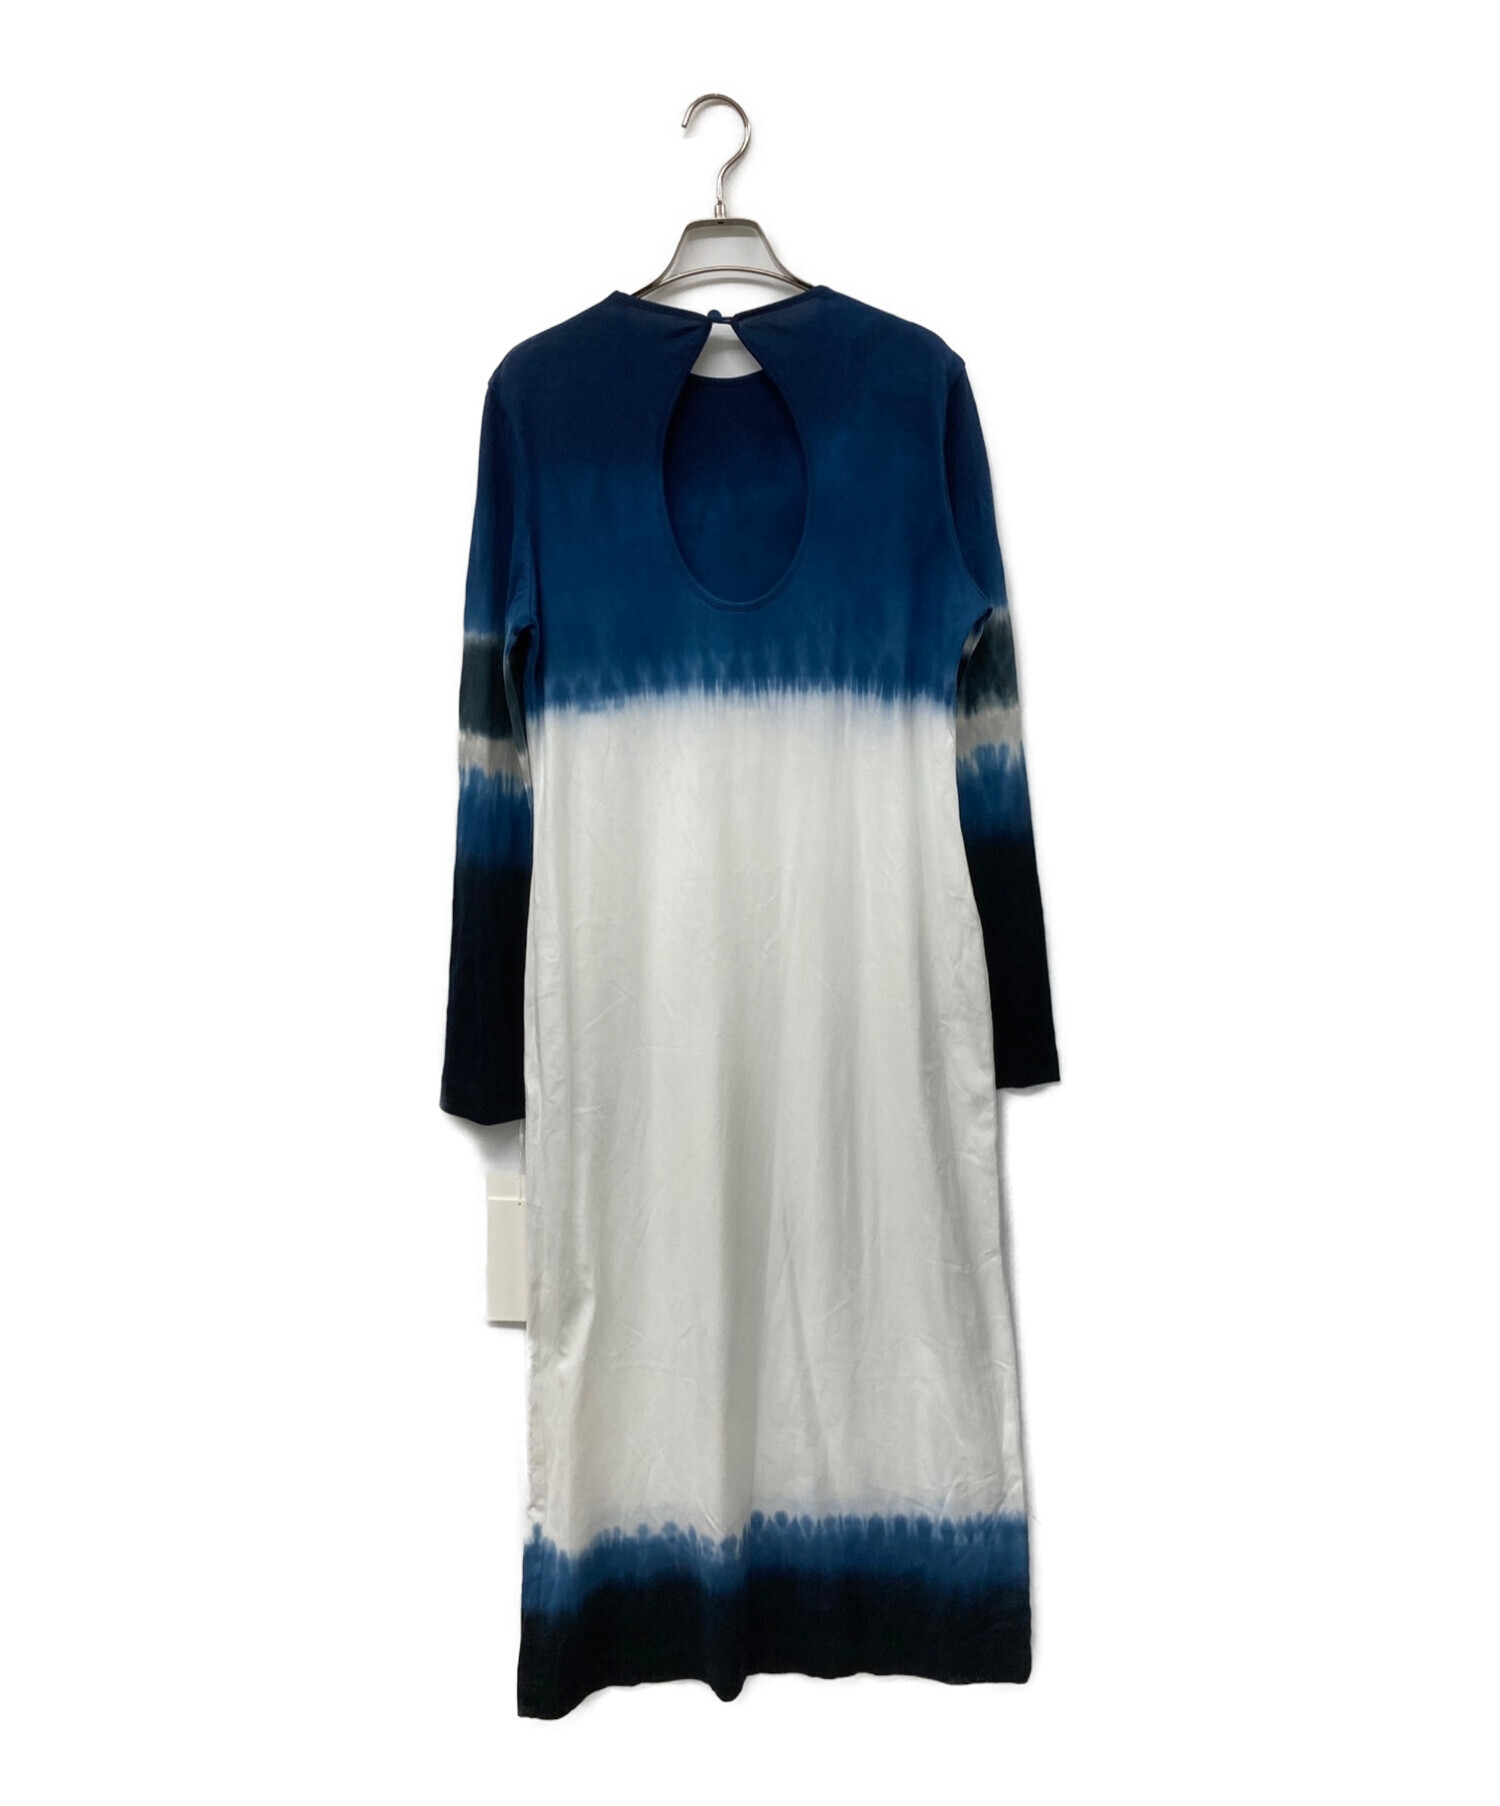 Mame Kurogouchi (マメクロゴウチ) Shibori Tie-Dyed Cotton Jersey Dress ブルー×ホワイト  サイズ:2 未使用品